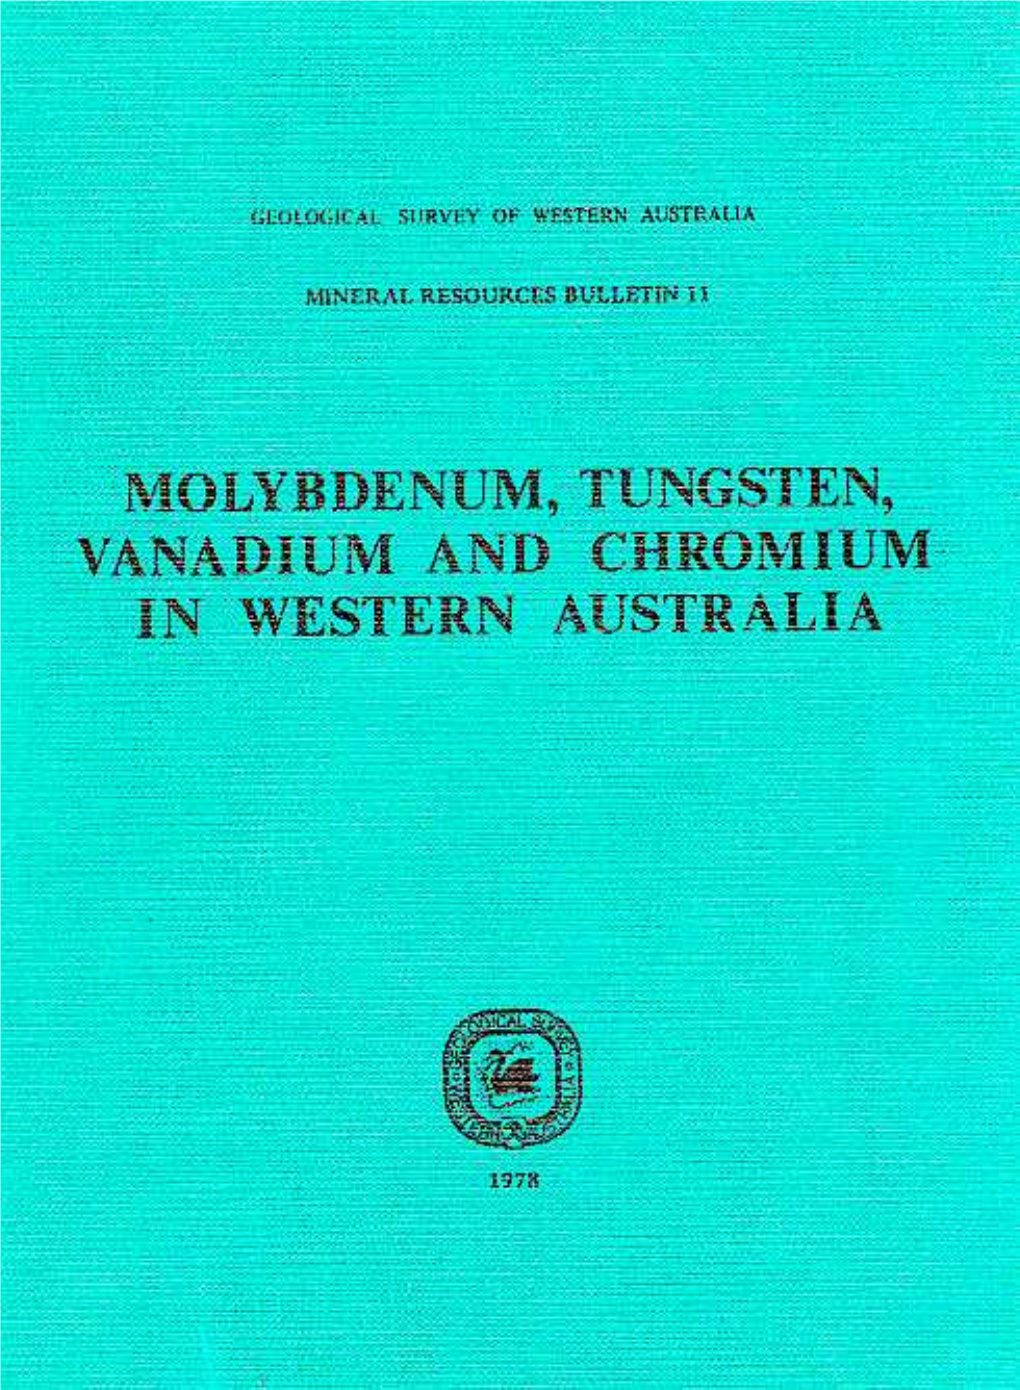 Olyb ~ Enum , Tungsten, Vanadium and Chromium in Western Australia